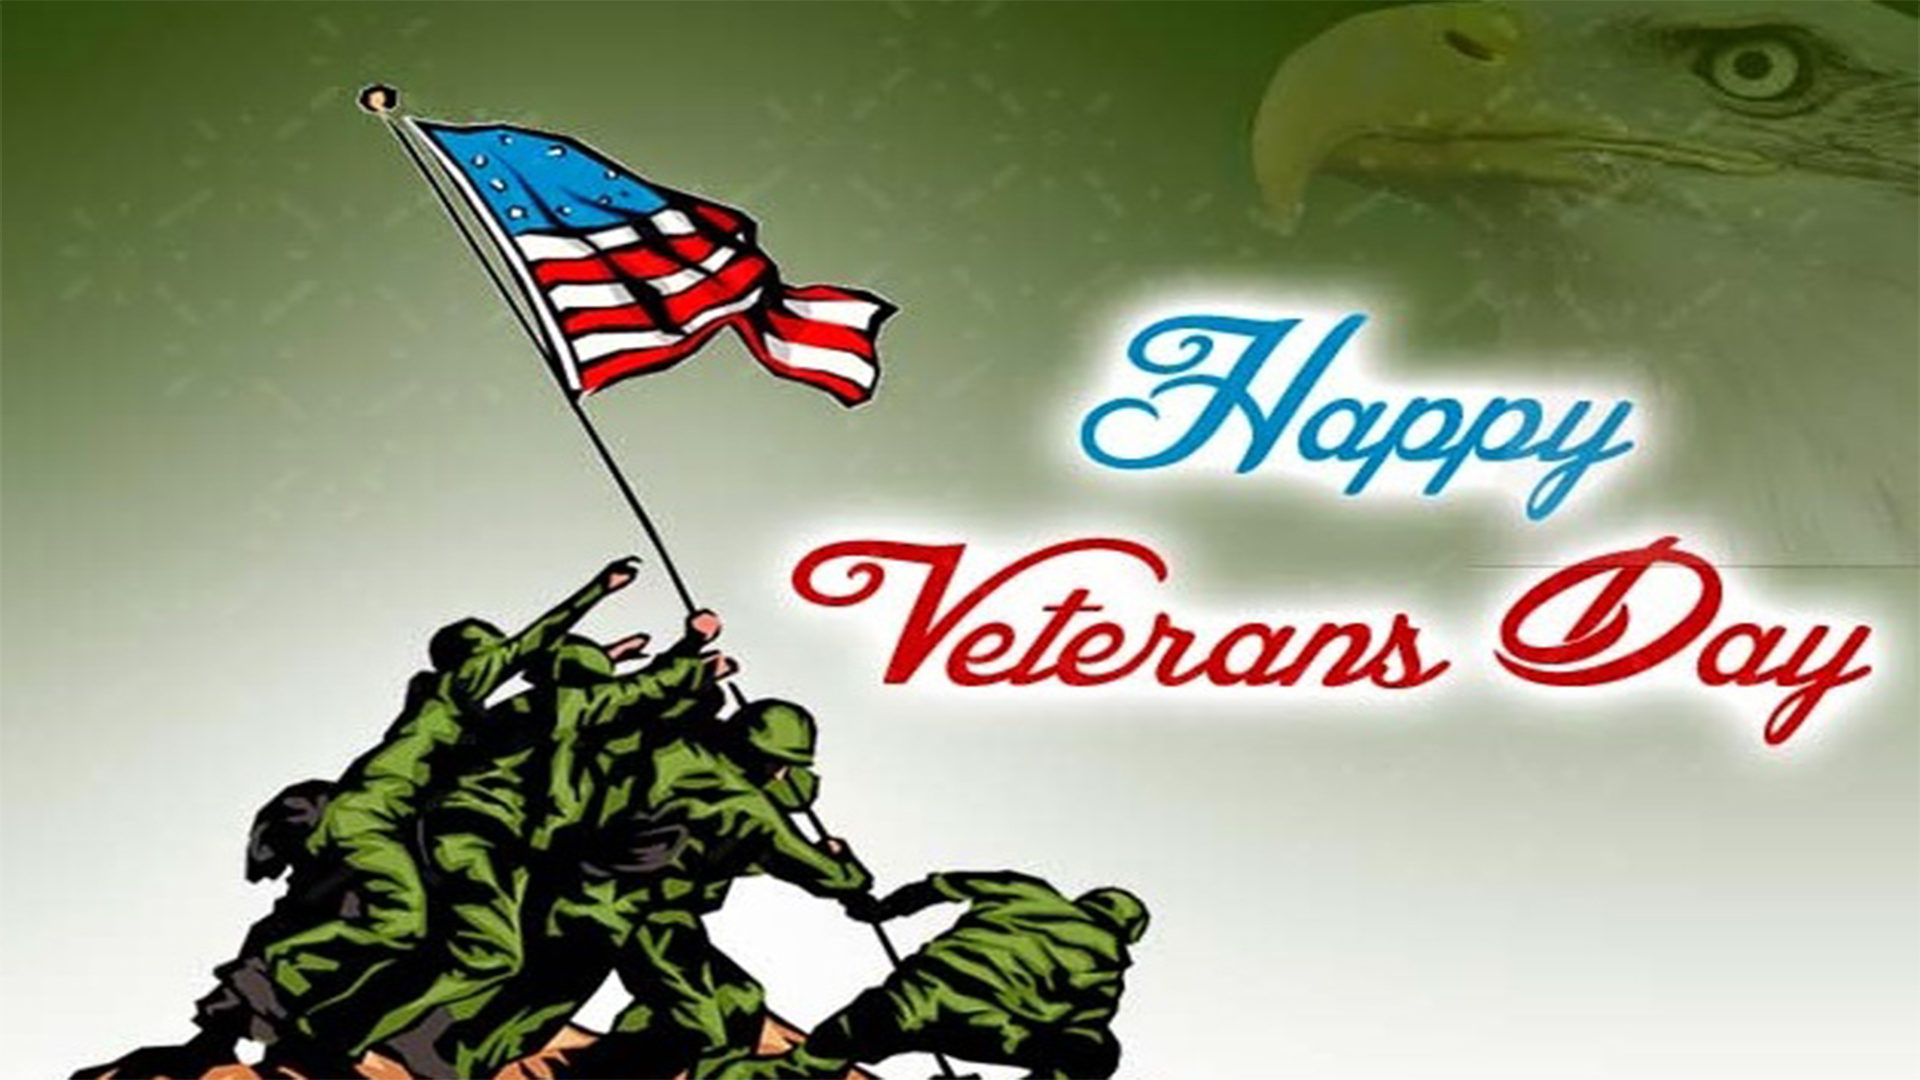 happy Veterans Day image